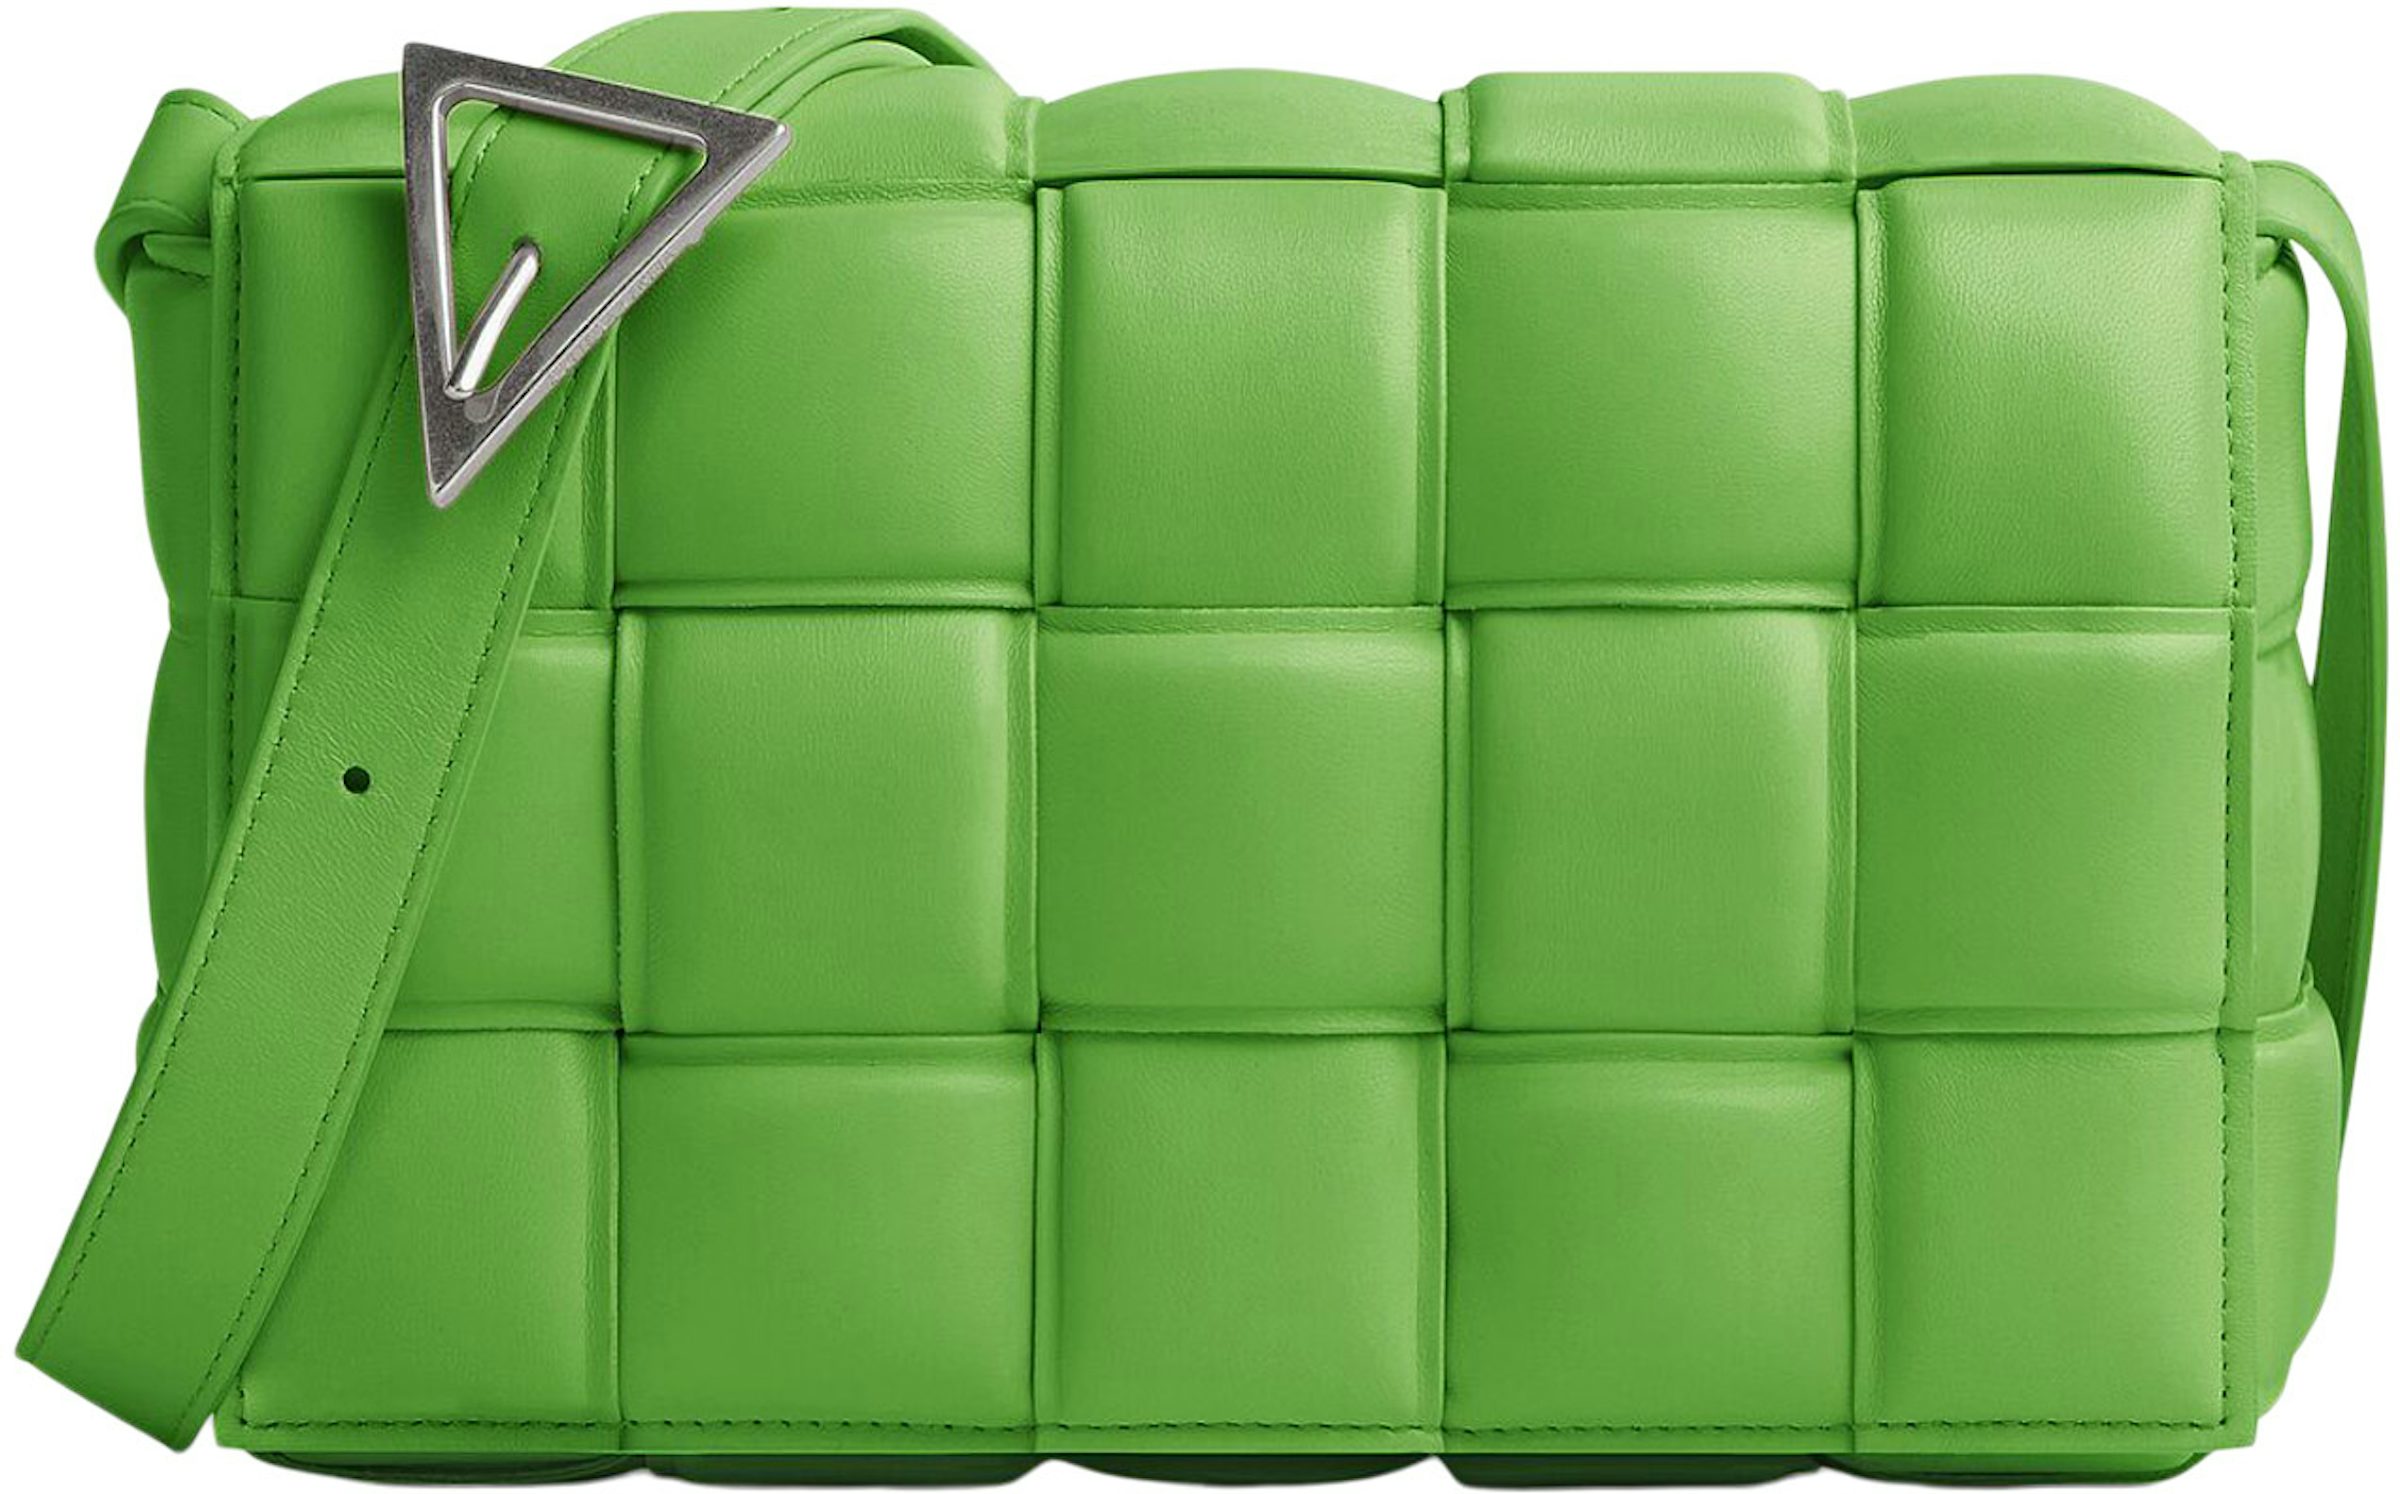 Bottega Veneta Shoulder bag 'Padded Cassette' Green